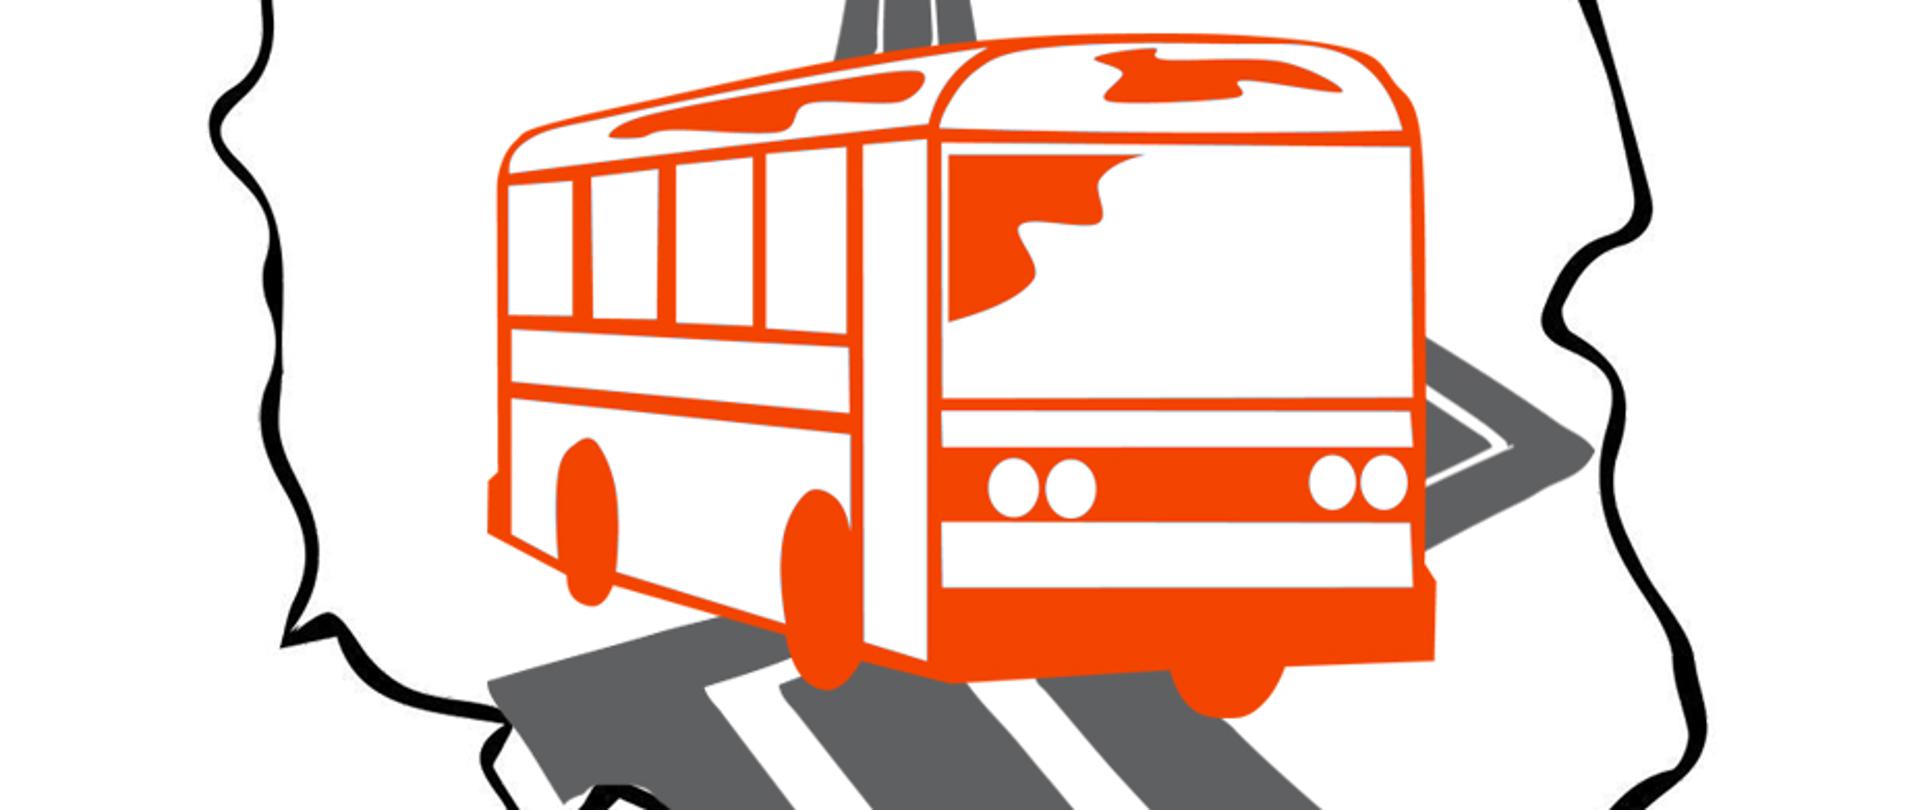 Na pierwszym planie zarys graficzny pomarańczowego autobusy. Dalej - w tle, zarys graficzny jezdni w kolorze szarym. Całość wrysowana w kontur Polski. 